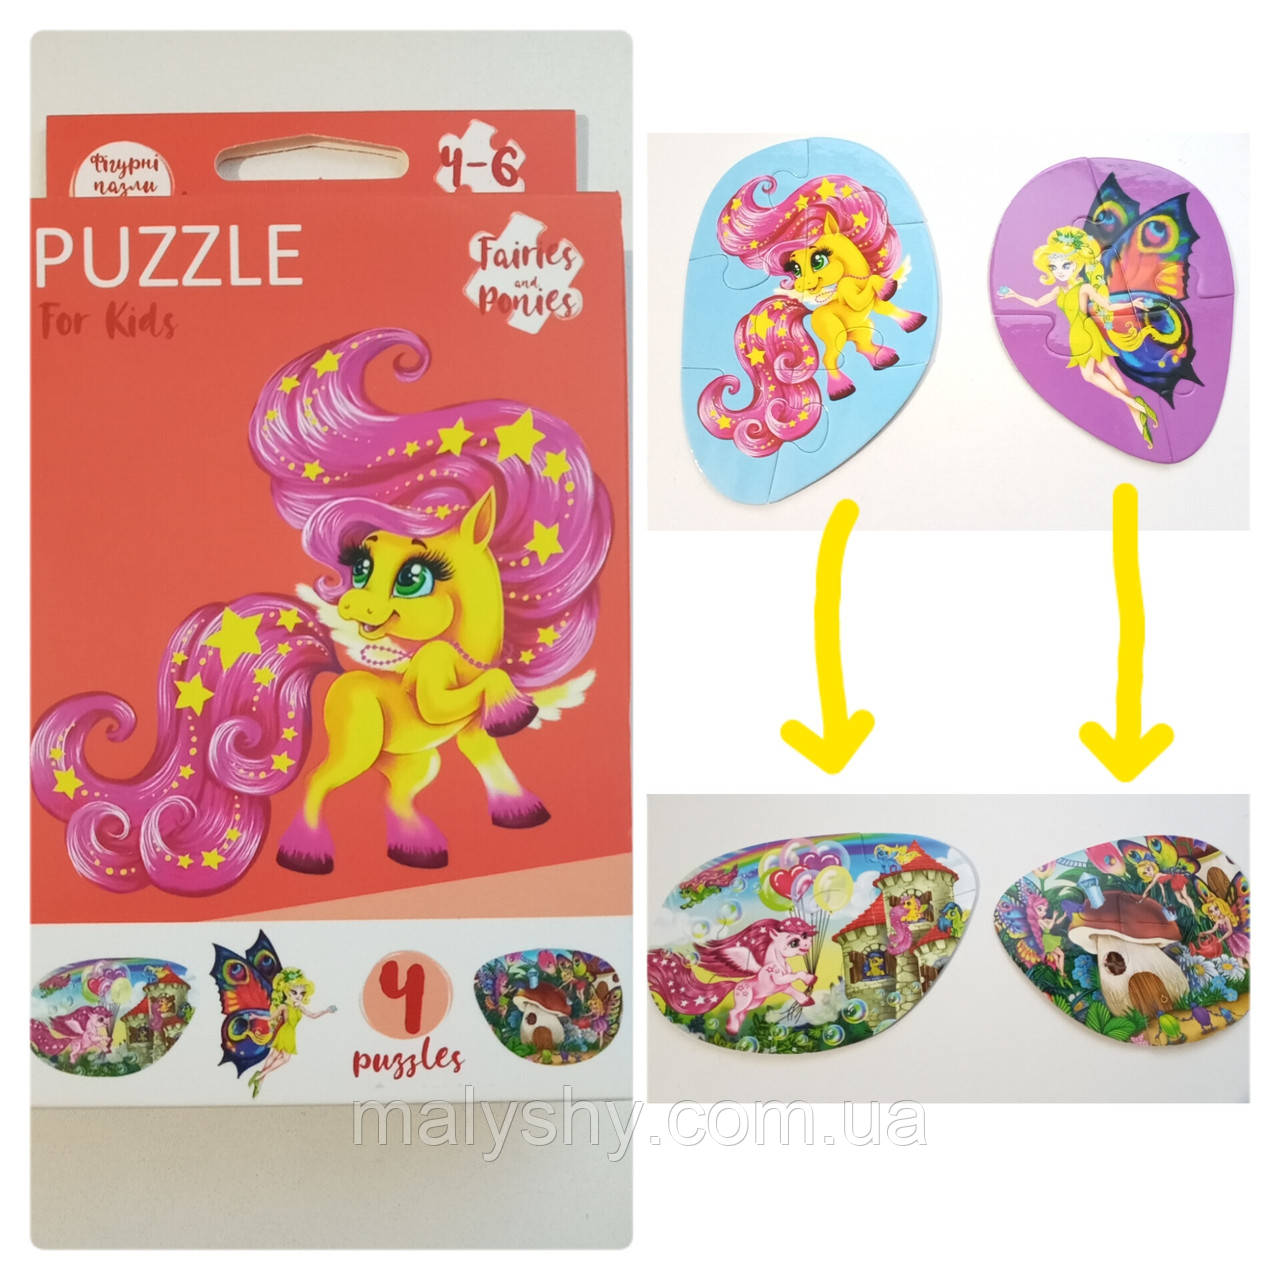 Развиваючі пазли для маленьких дітей "Puzzle For Kids" / Fairies and ponies 2